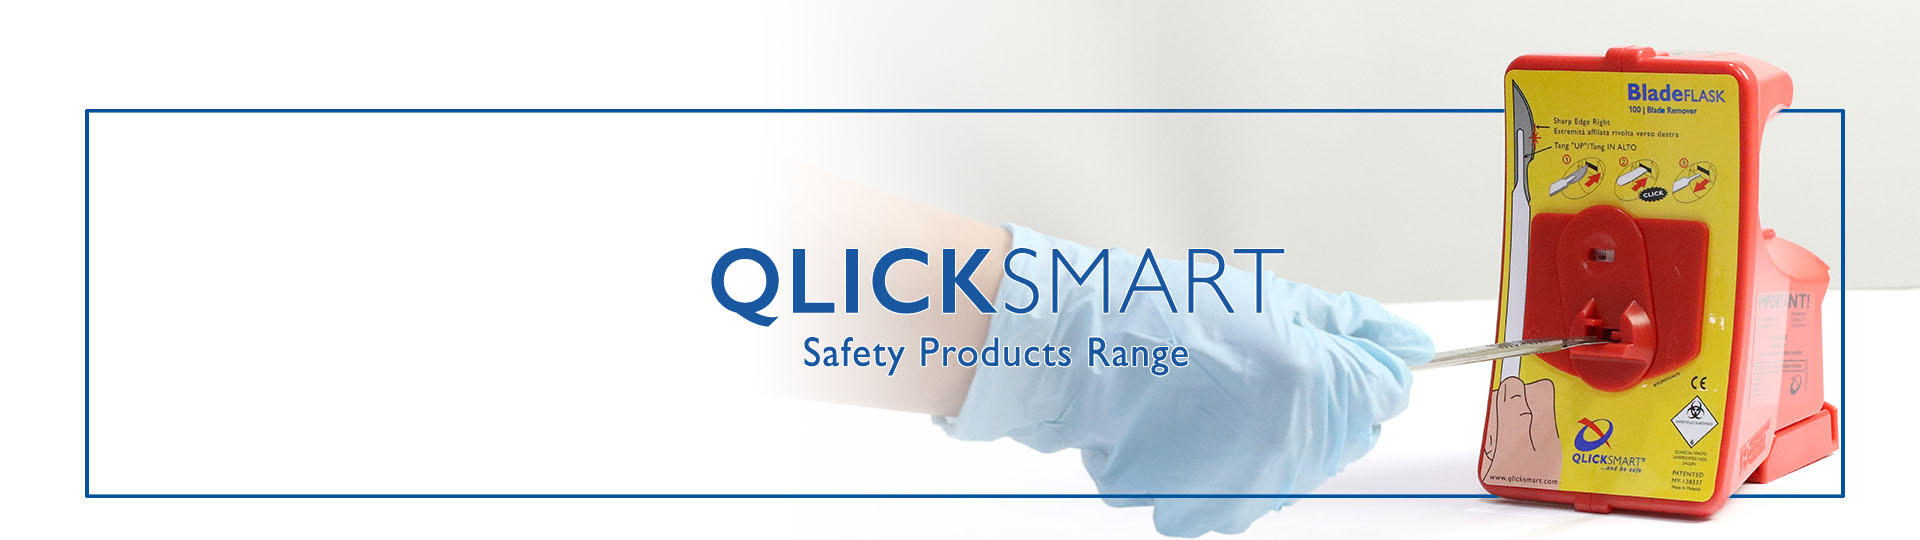 Qlicksmart Products